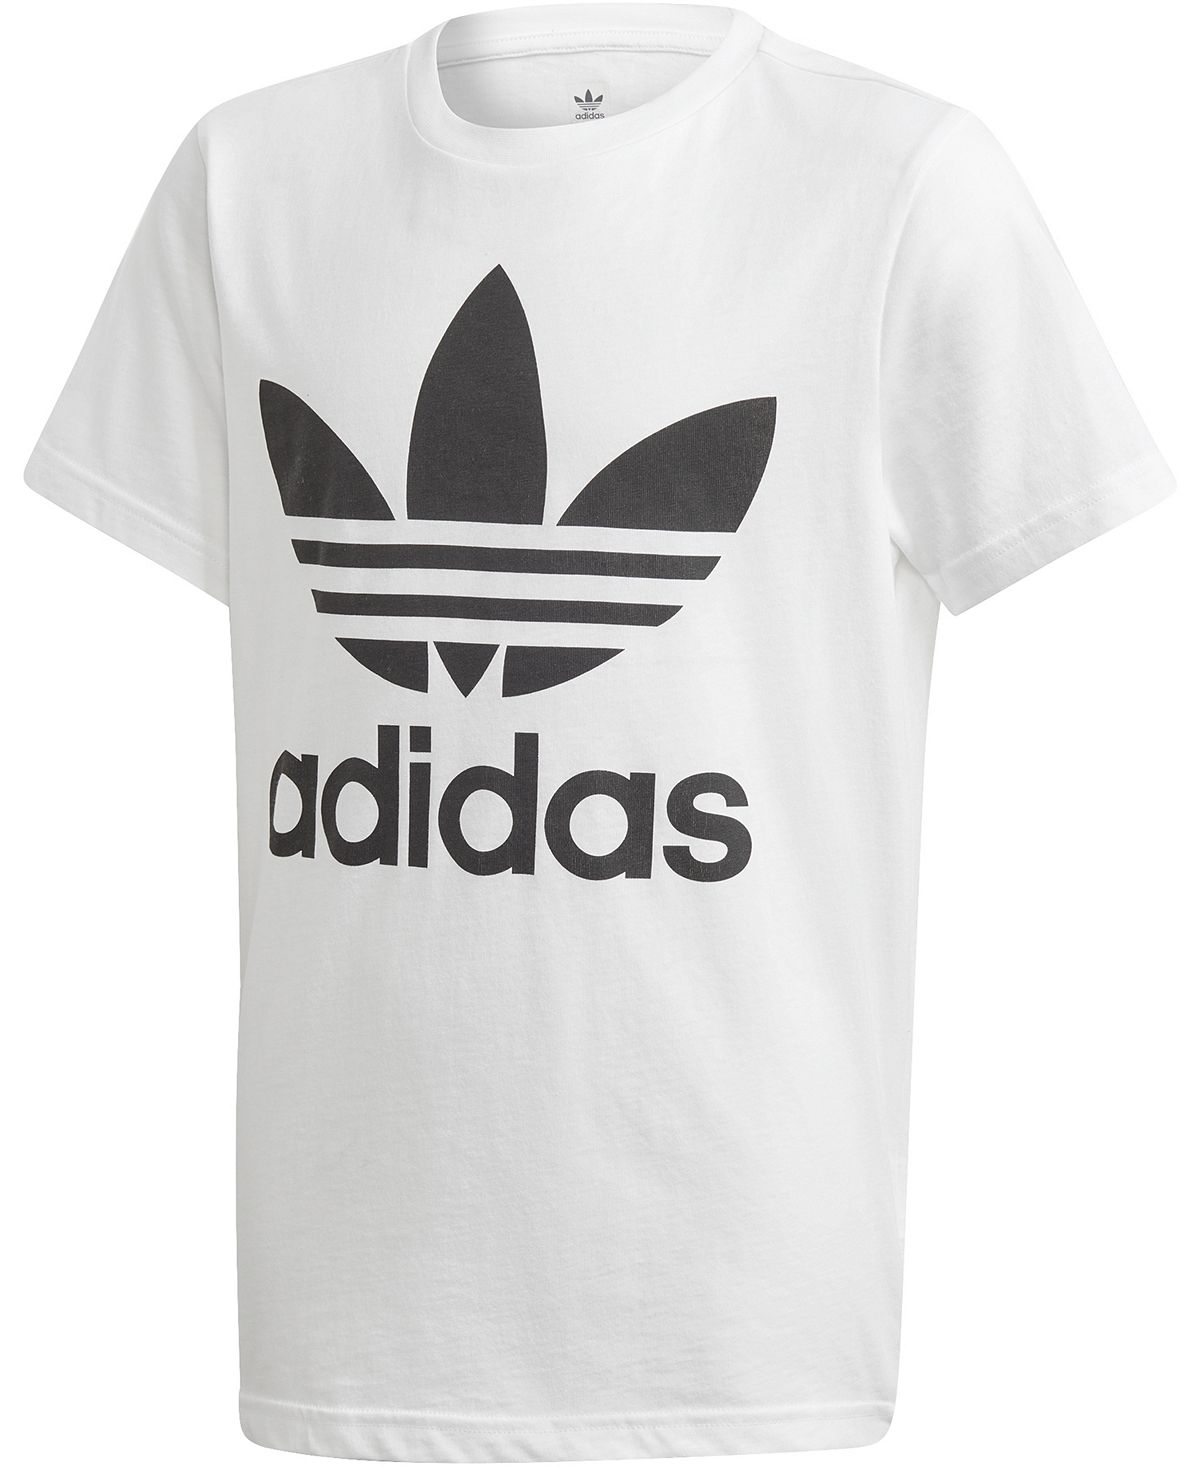 Хлопковая футболка с логотипом Big Boys adidas